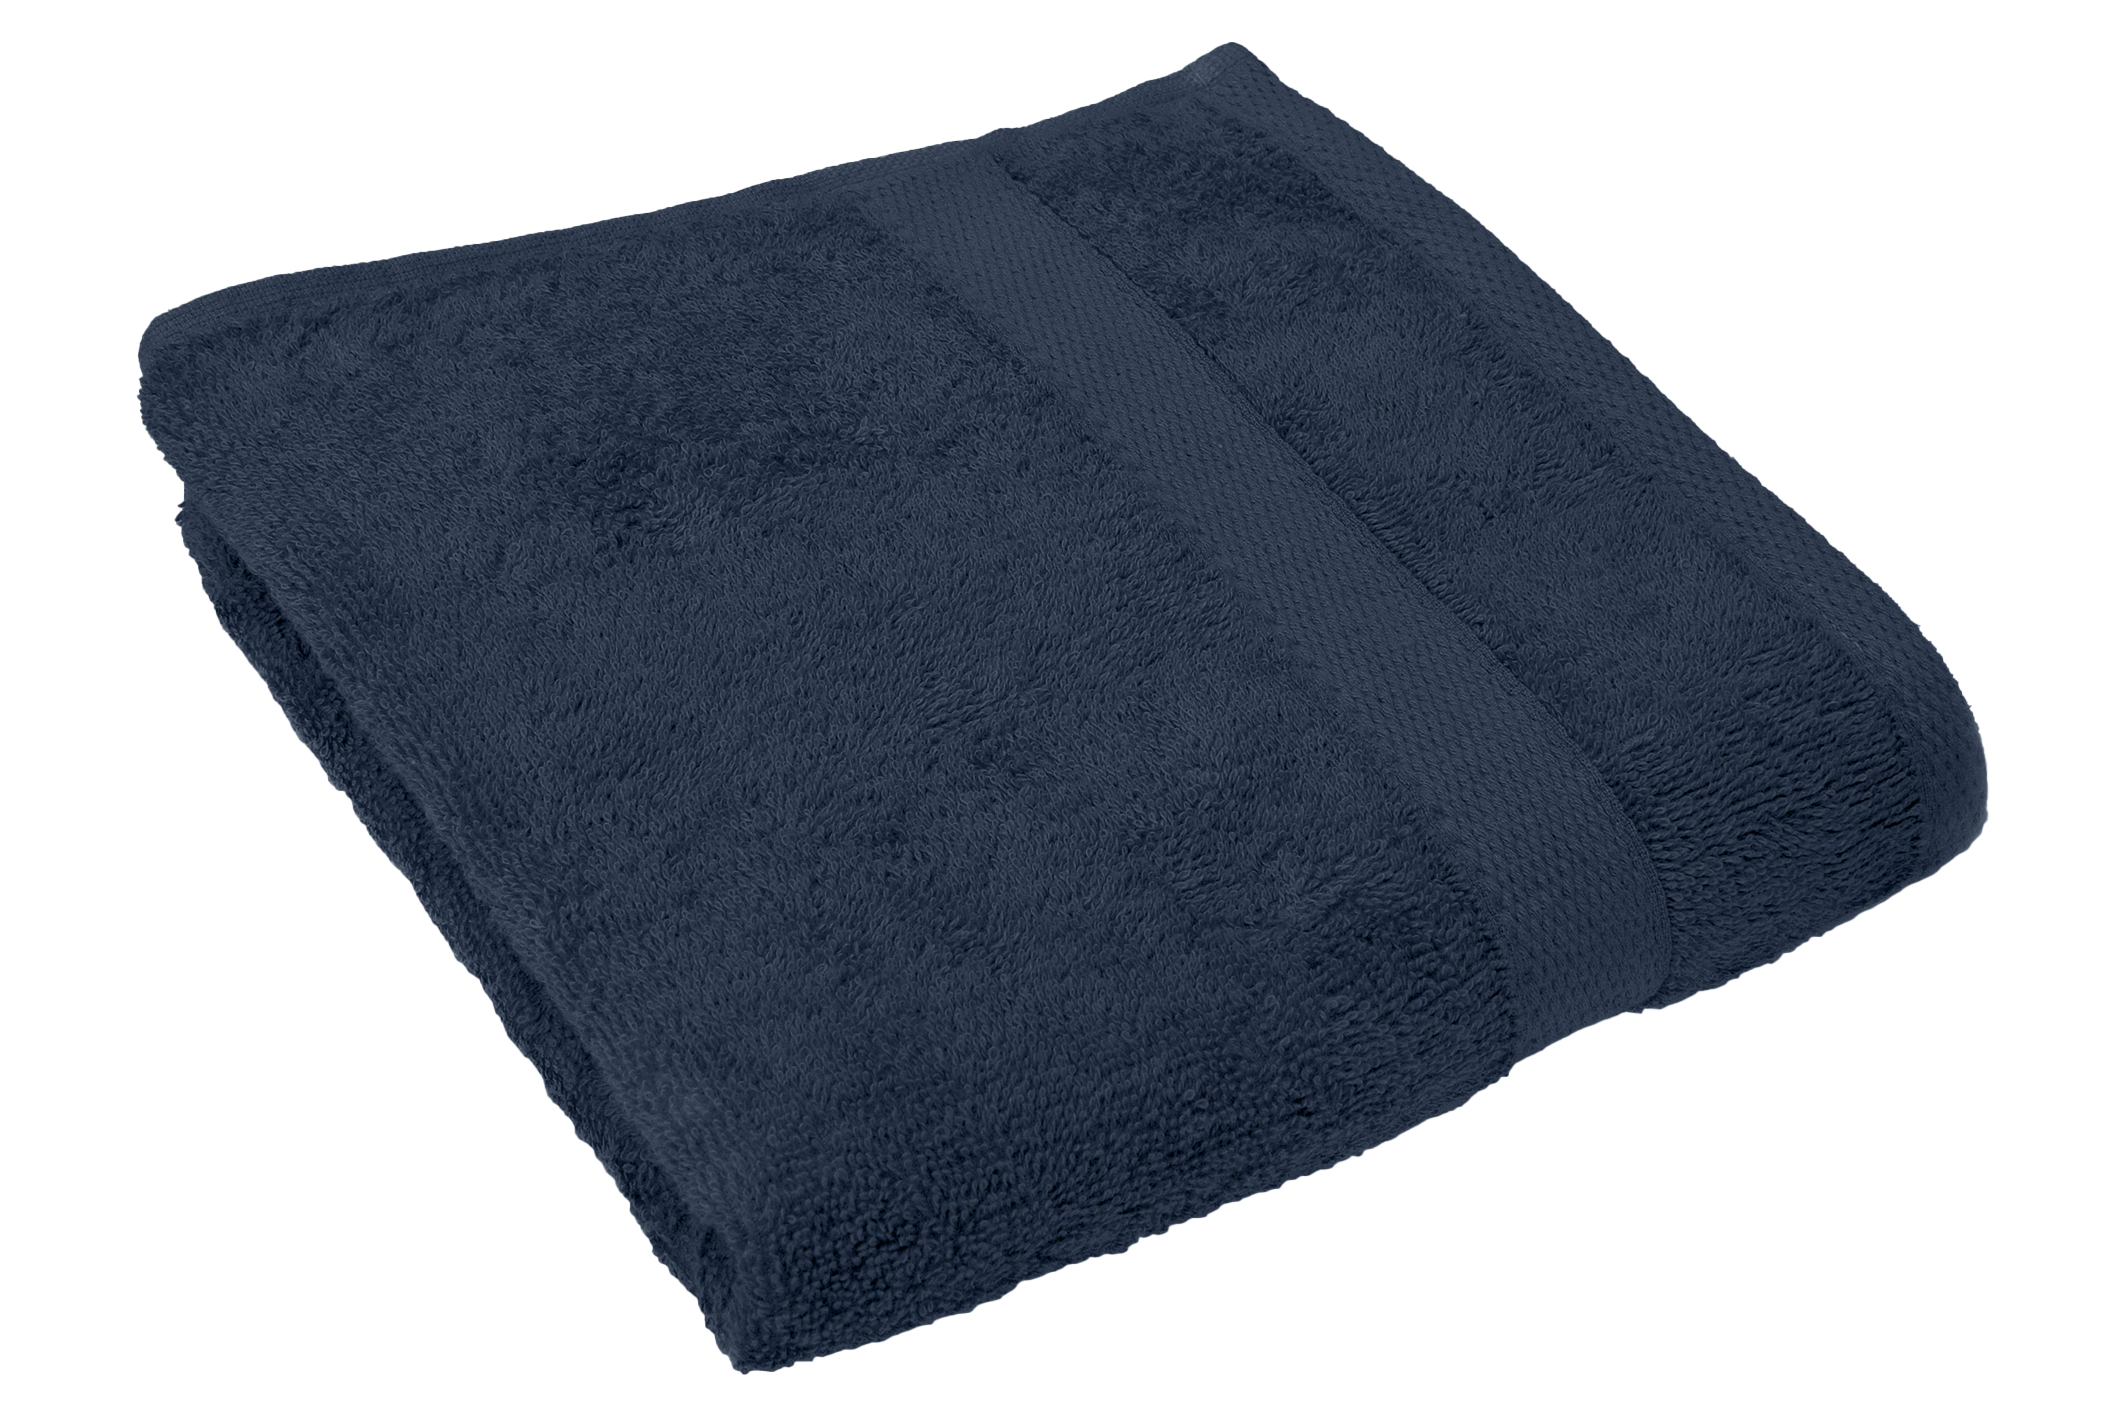 Bath towel 50x100cm, insigna blue